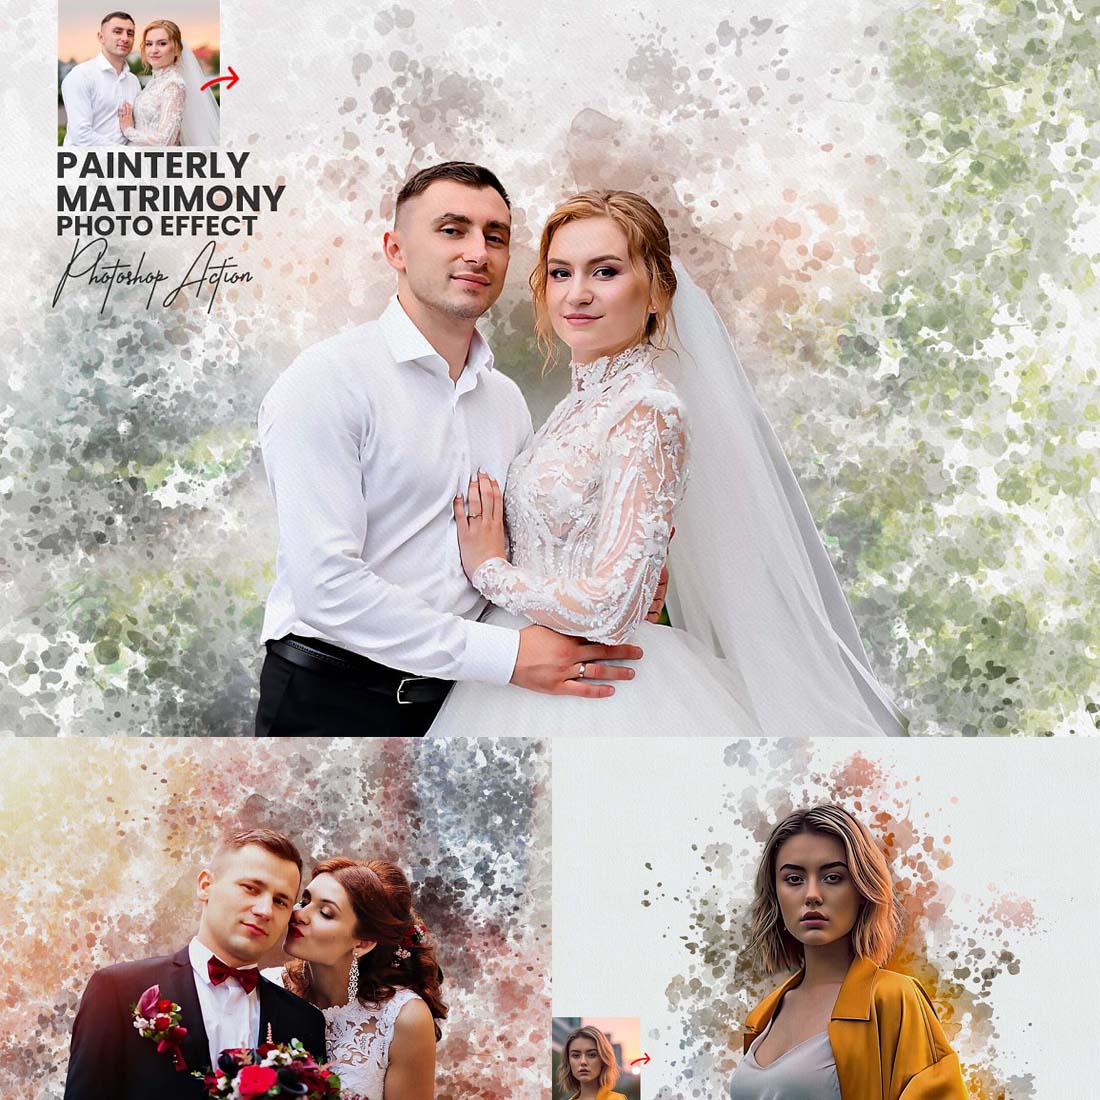 Painterly Matrimony Photoshop Action cover image.